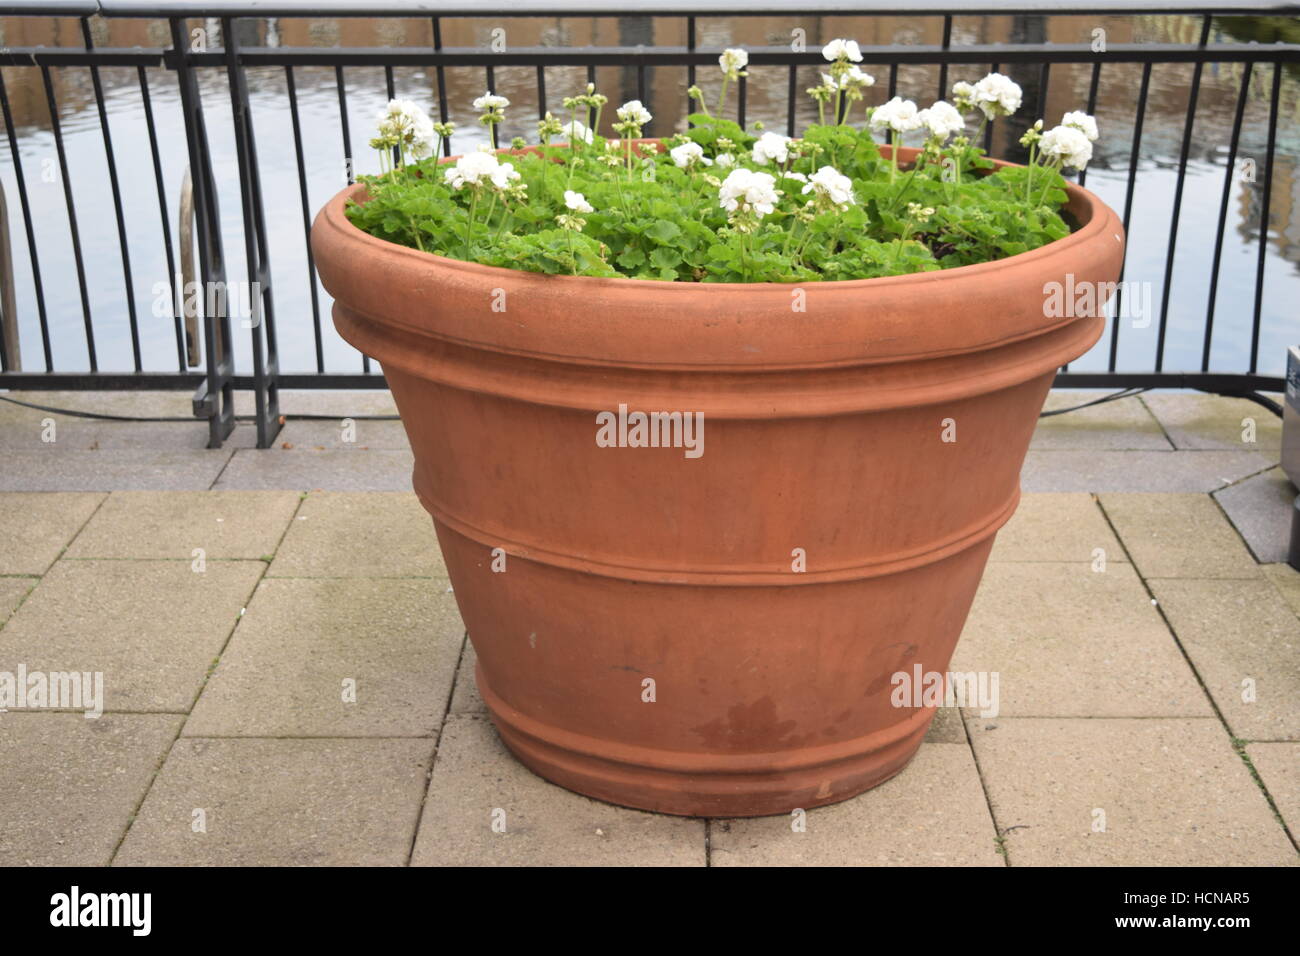 Grand pot rond avec des fleurs blanches et des feuilles vertes qui poussent  sur un balcon Photo Stock - Alamy